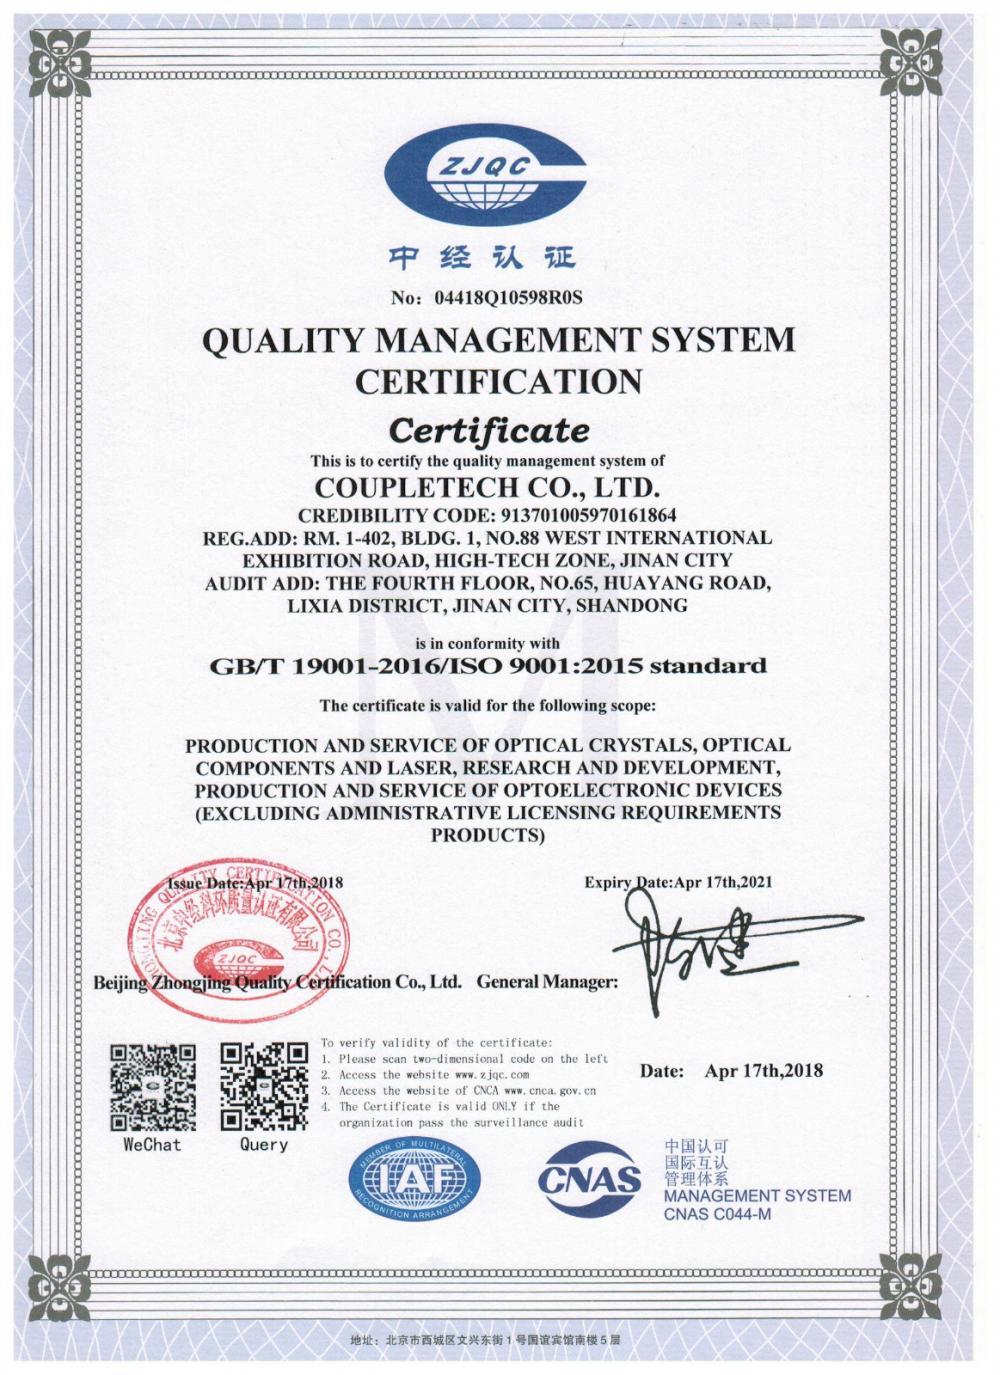 Coupletech Co., Ltd. prošel certifikací: Modulární držák pro krystaly s aktivní regulací teploty.